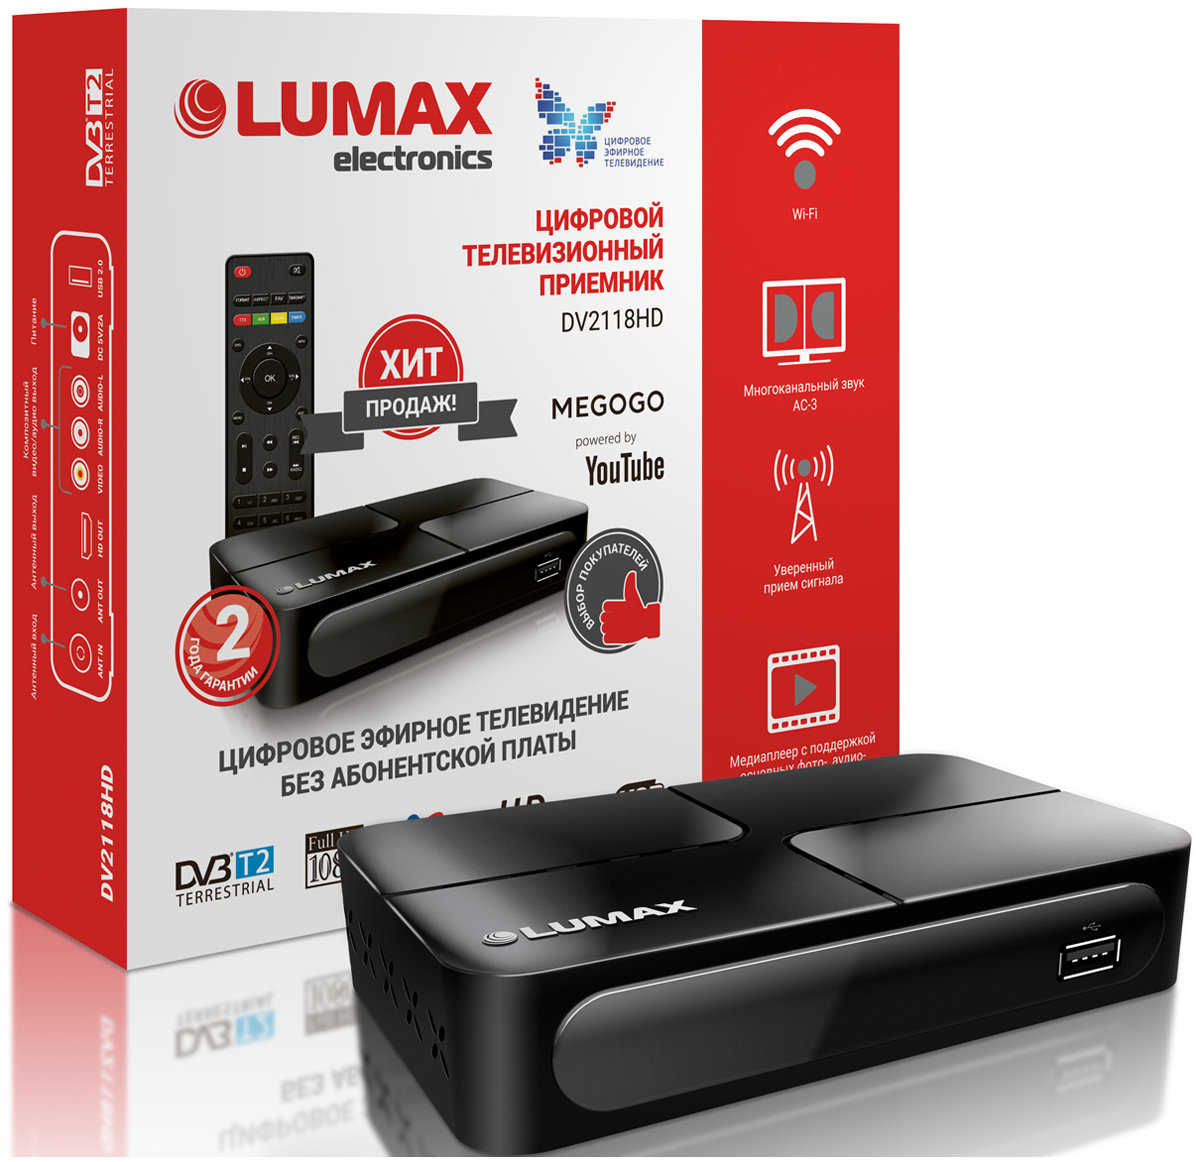 Цифровой телевизионный ресивер Lumax DV 2118 HD пульт dvbt2 555hd для цифровой приставки lumax